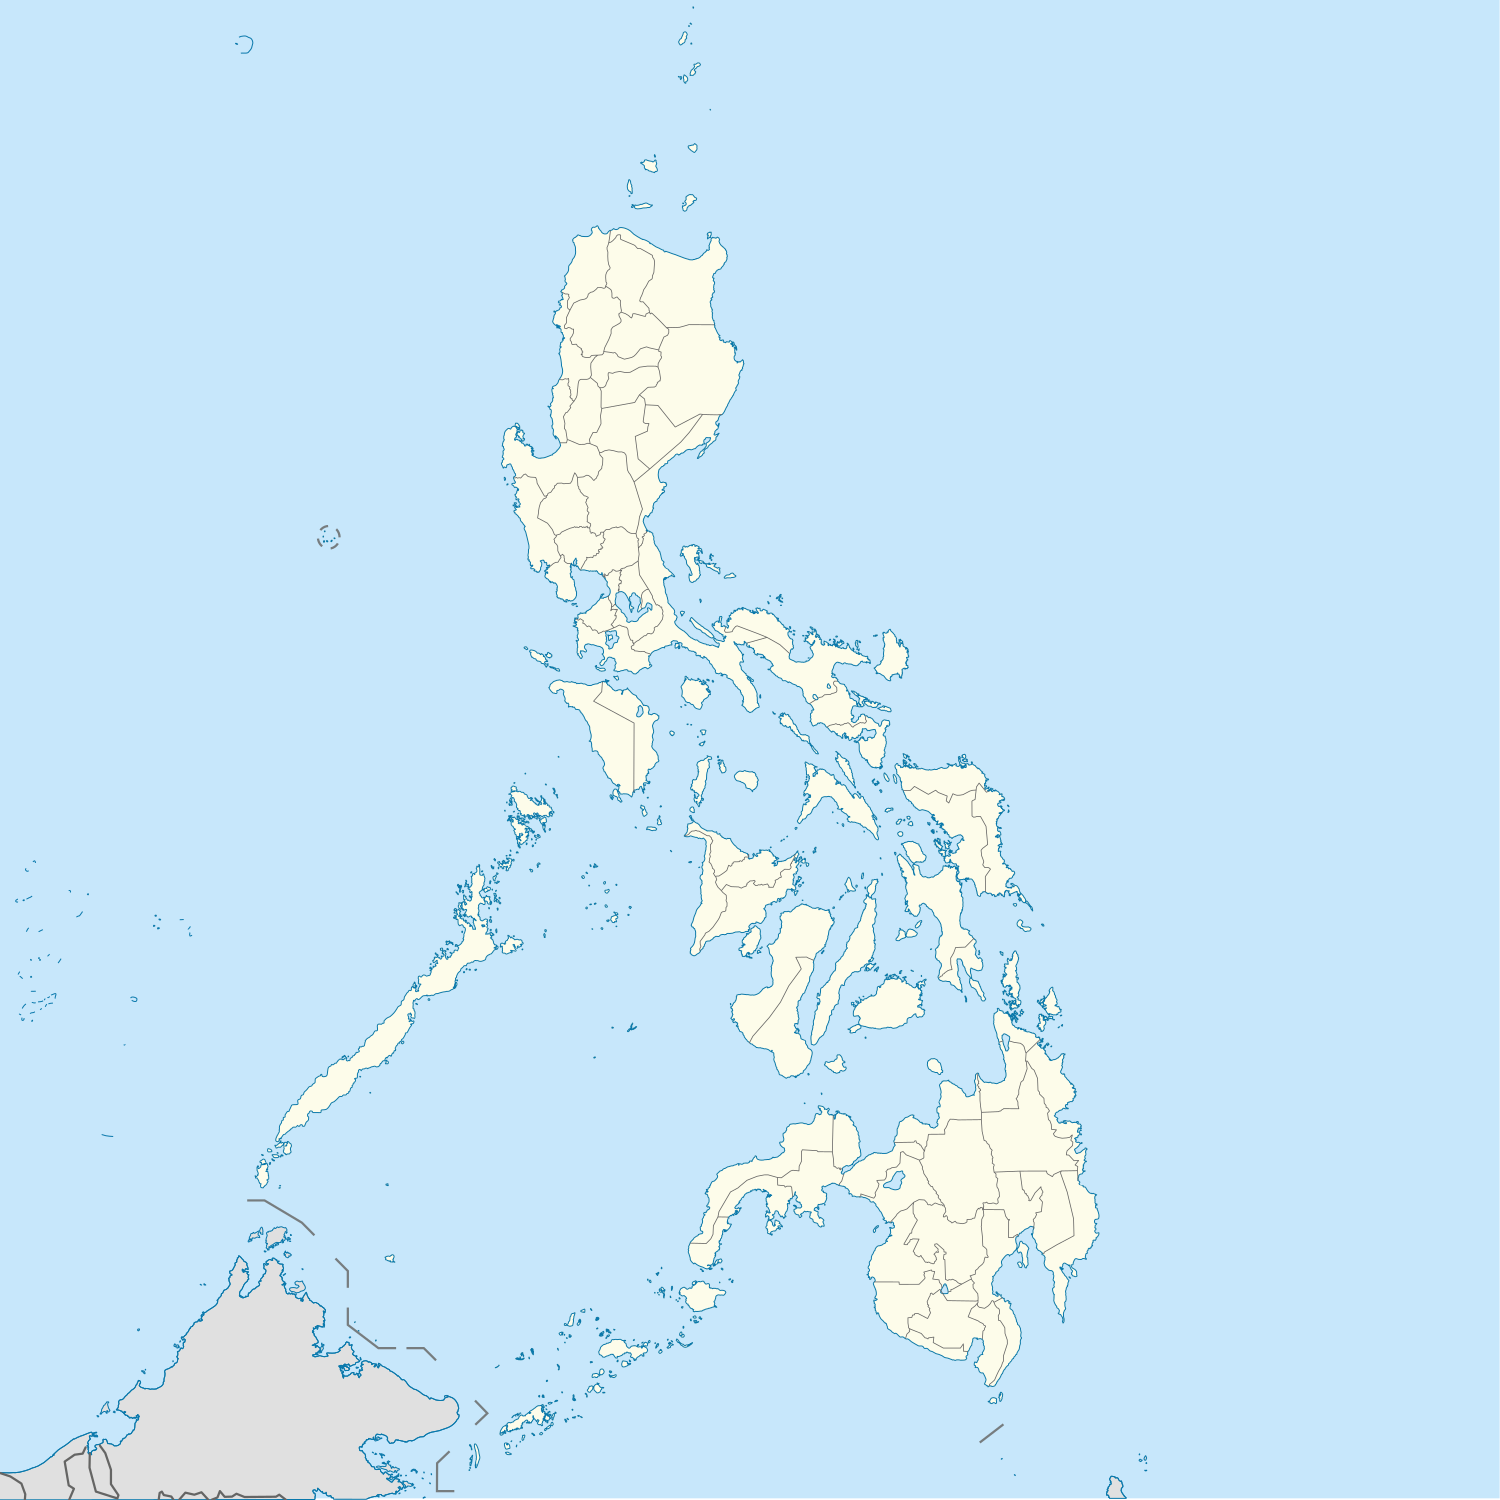 Карта Филиппин с указанием расположения всех городов и муниципалитетов (по состоянию на сентябрь 2019 г.). Желтая точка обозначает муниципалитет, зеленый компонентный город, фиолетовый независимый компонентный город и красный высокоурбанизированный город. Обратите внимание, что не все города и / или поселки, на которые наведен курсор, выделены, особенно в областях с большим количеством точек.